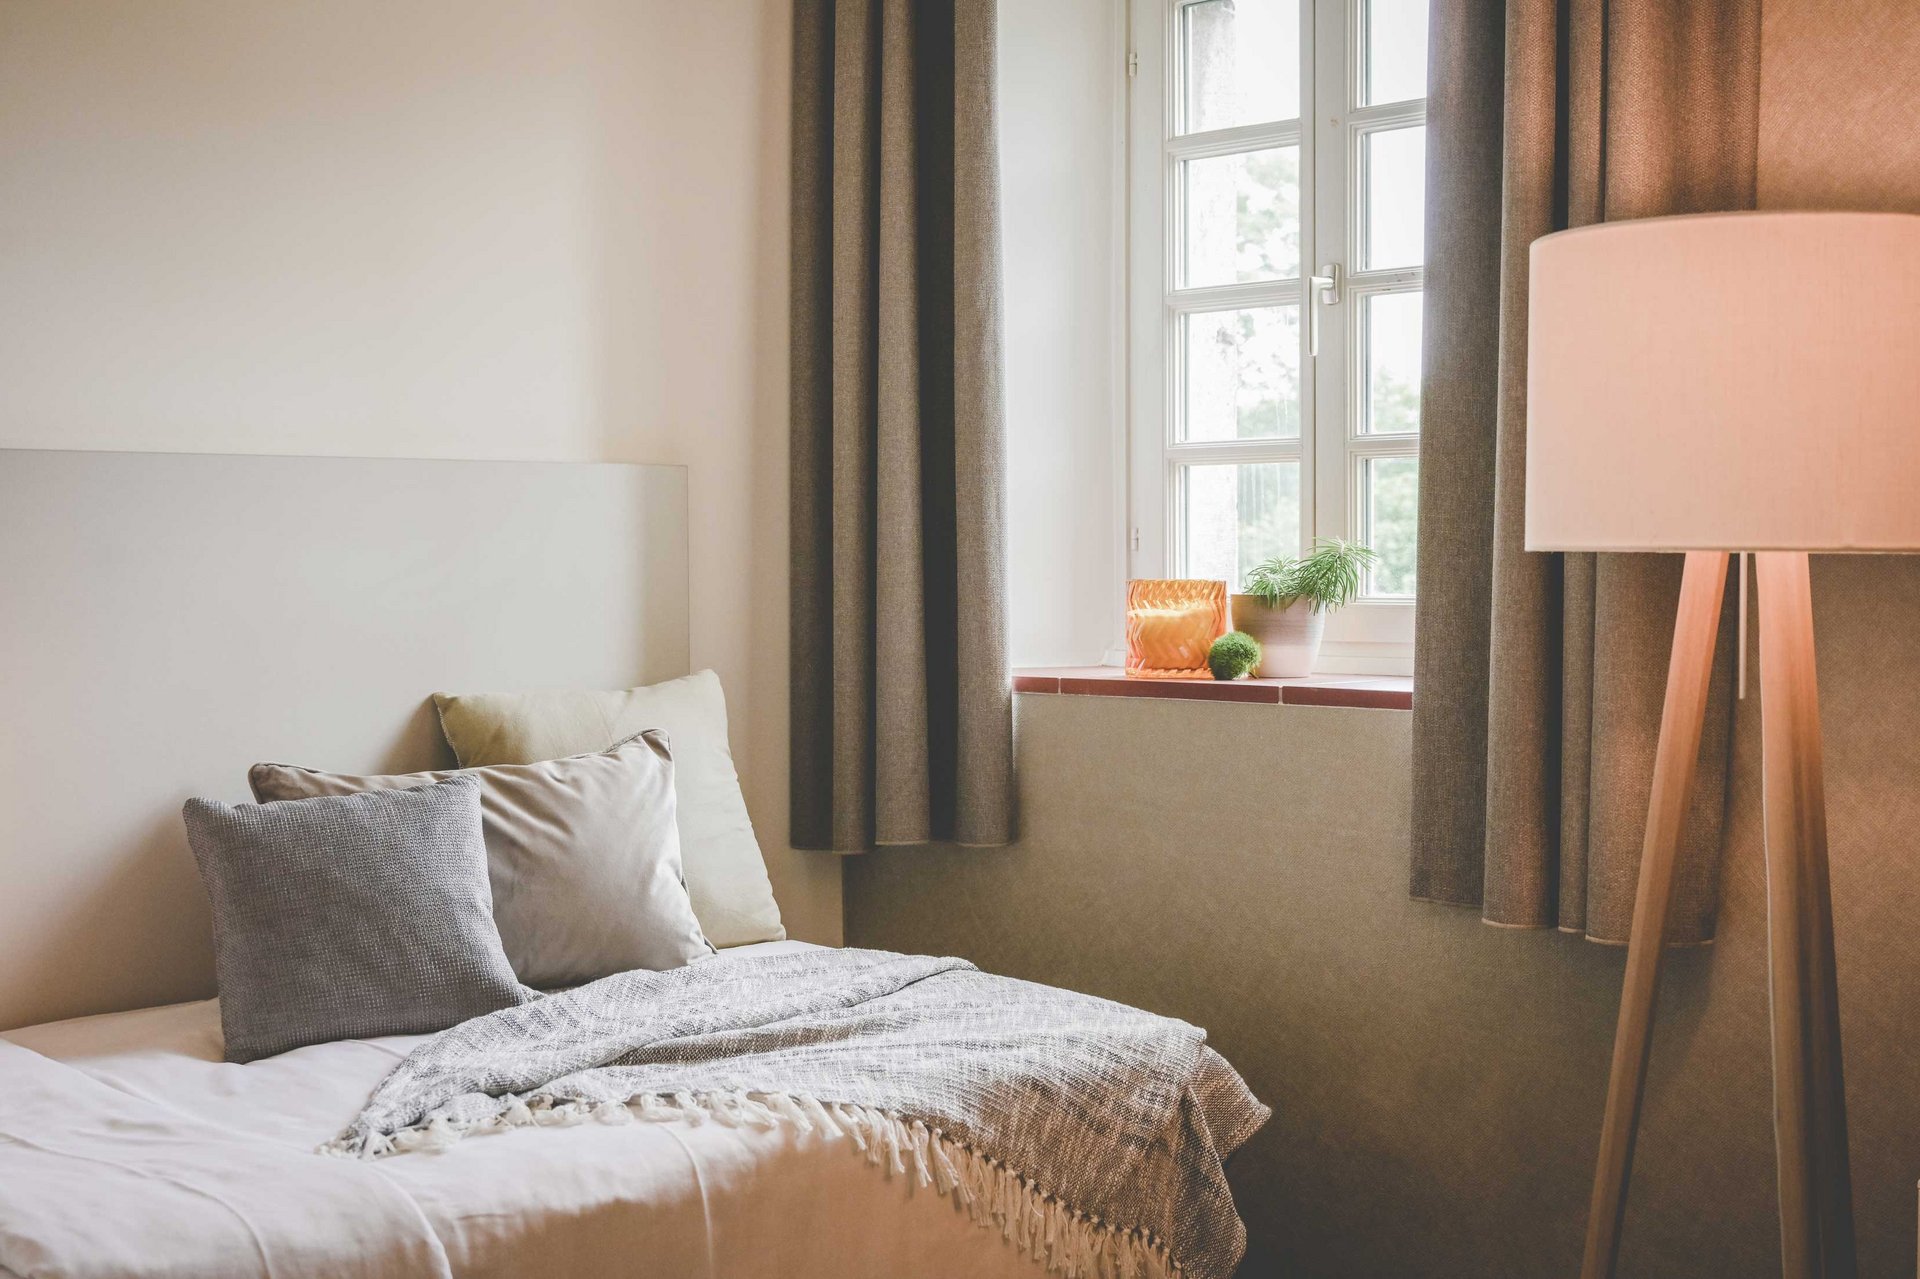 Ein Bett mit Kissen steht in einem wohnlichen Raum neben einem Fenster mit Vorhängen und einer Stehlampe.